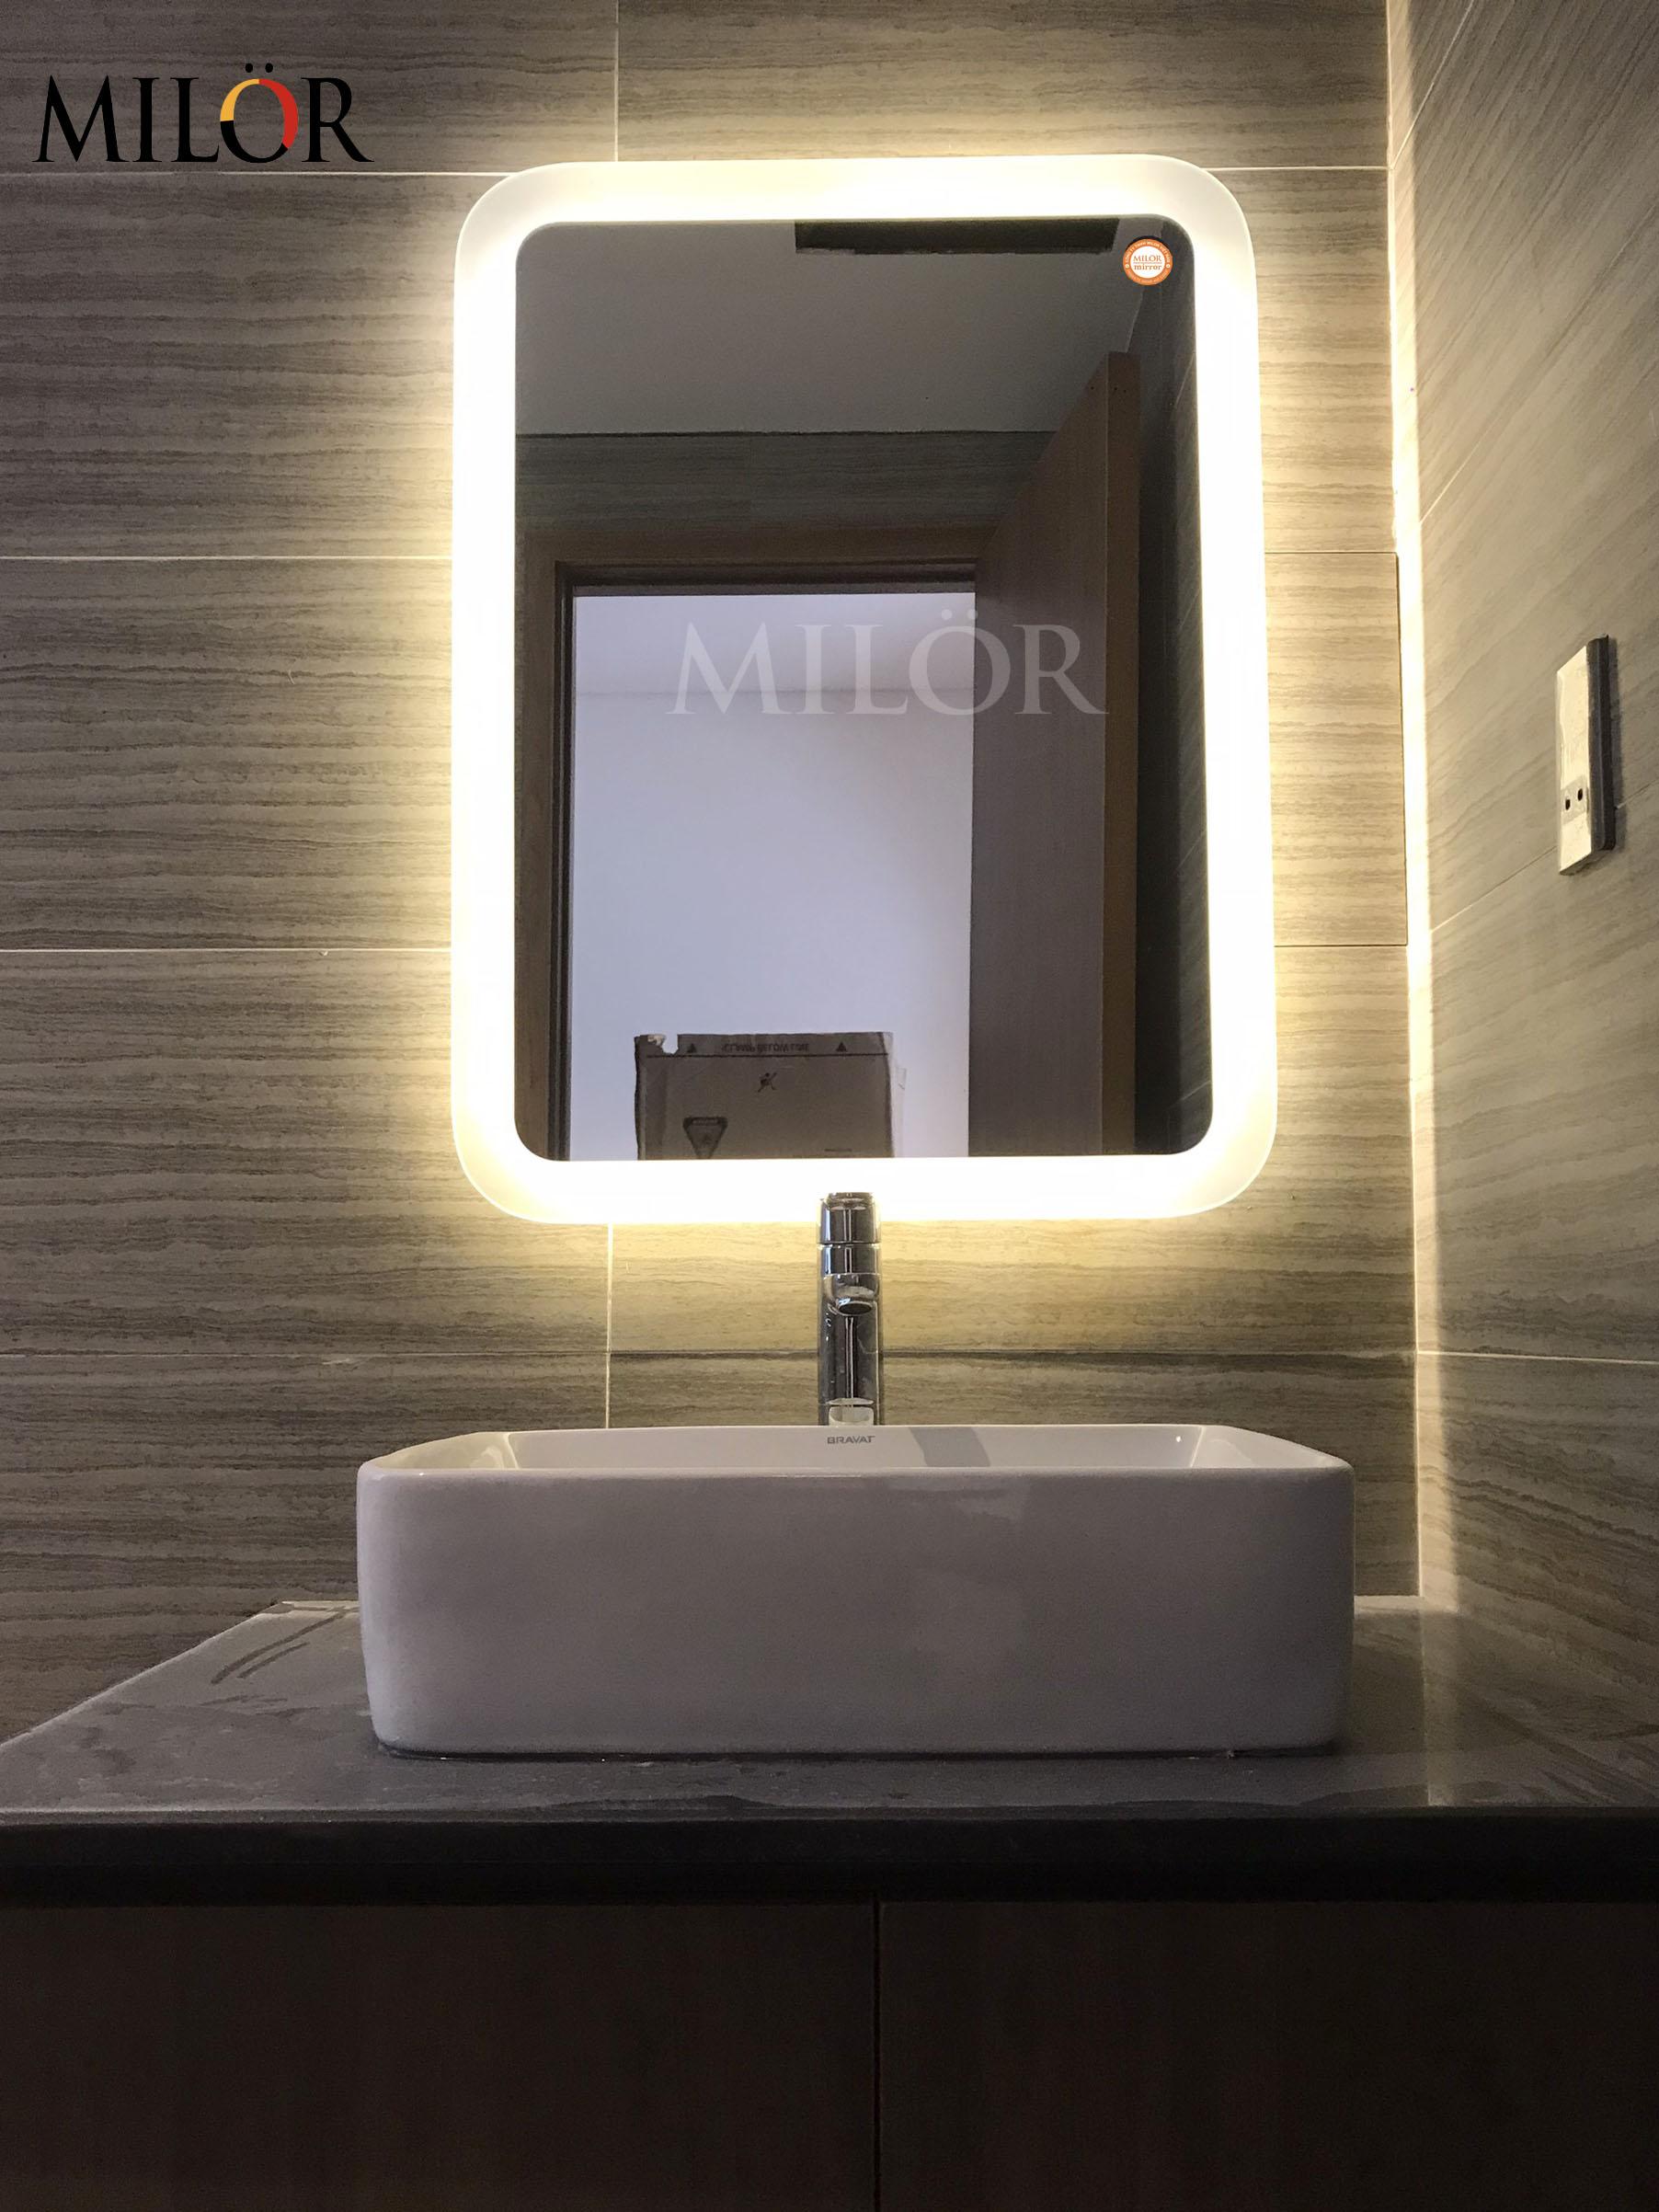 Thiết bị vệ sinh đèn LED gương nhà tắm:
Thiết bị vệ sinh đèn LED gương nhà tắm là sự kết hợp hoàn hảo giữa sự hiện đại, tối ưu hóa chi phí và tiện nghi. Thiết bị vệ sinh đèn LED gương nhà tắm không chỉ giúp bạn vệ sinh phòng tắm mà còn mang lại ánh sáng đẹp cho không gian. Hãy cùng khám phá những hình ảnh độc đáo về thiết bị vệ sinh đèn LED gương nhà tắm để trang trí phòng tắm của bạn và đón chào sự thay đổi mang tầm quốc tế.